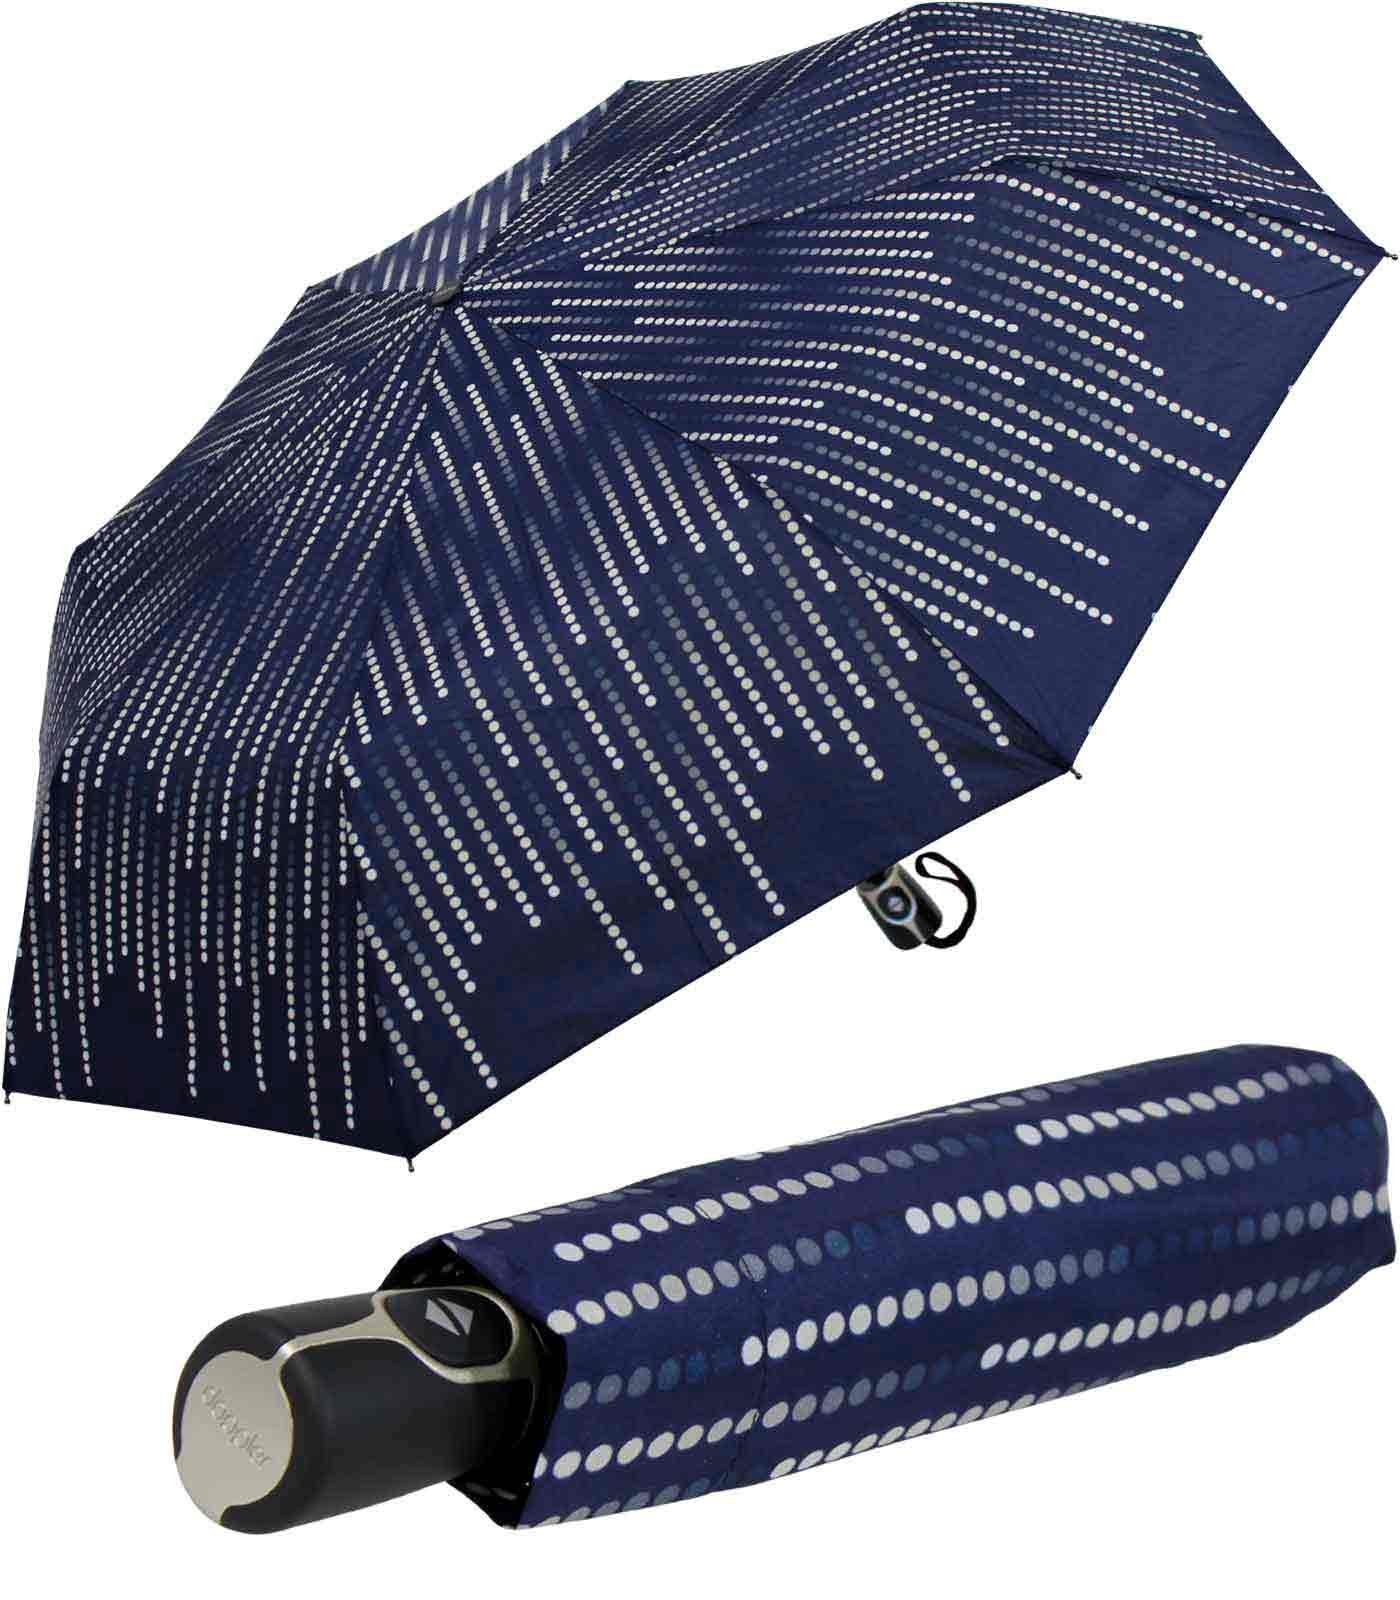 Fiber UV-Schutz Damen stabil nutzbar - Auf-Zu und dunkelblau elegant, doppler® Glamour, Magic als Taschenregenschirm Sonnenschirm